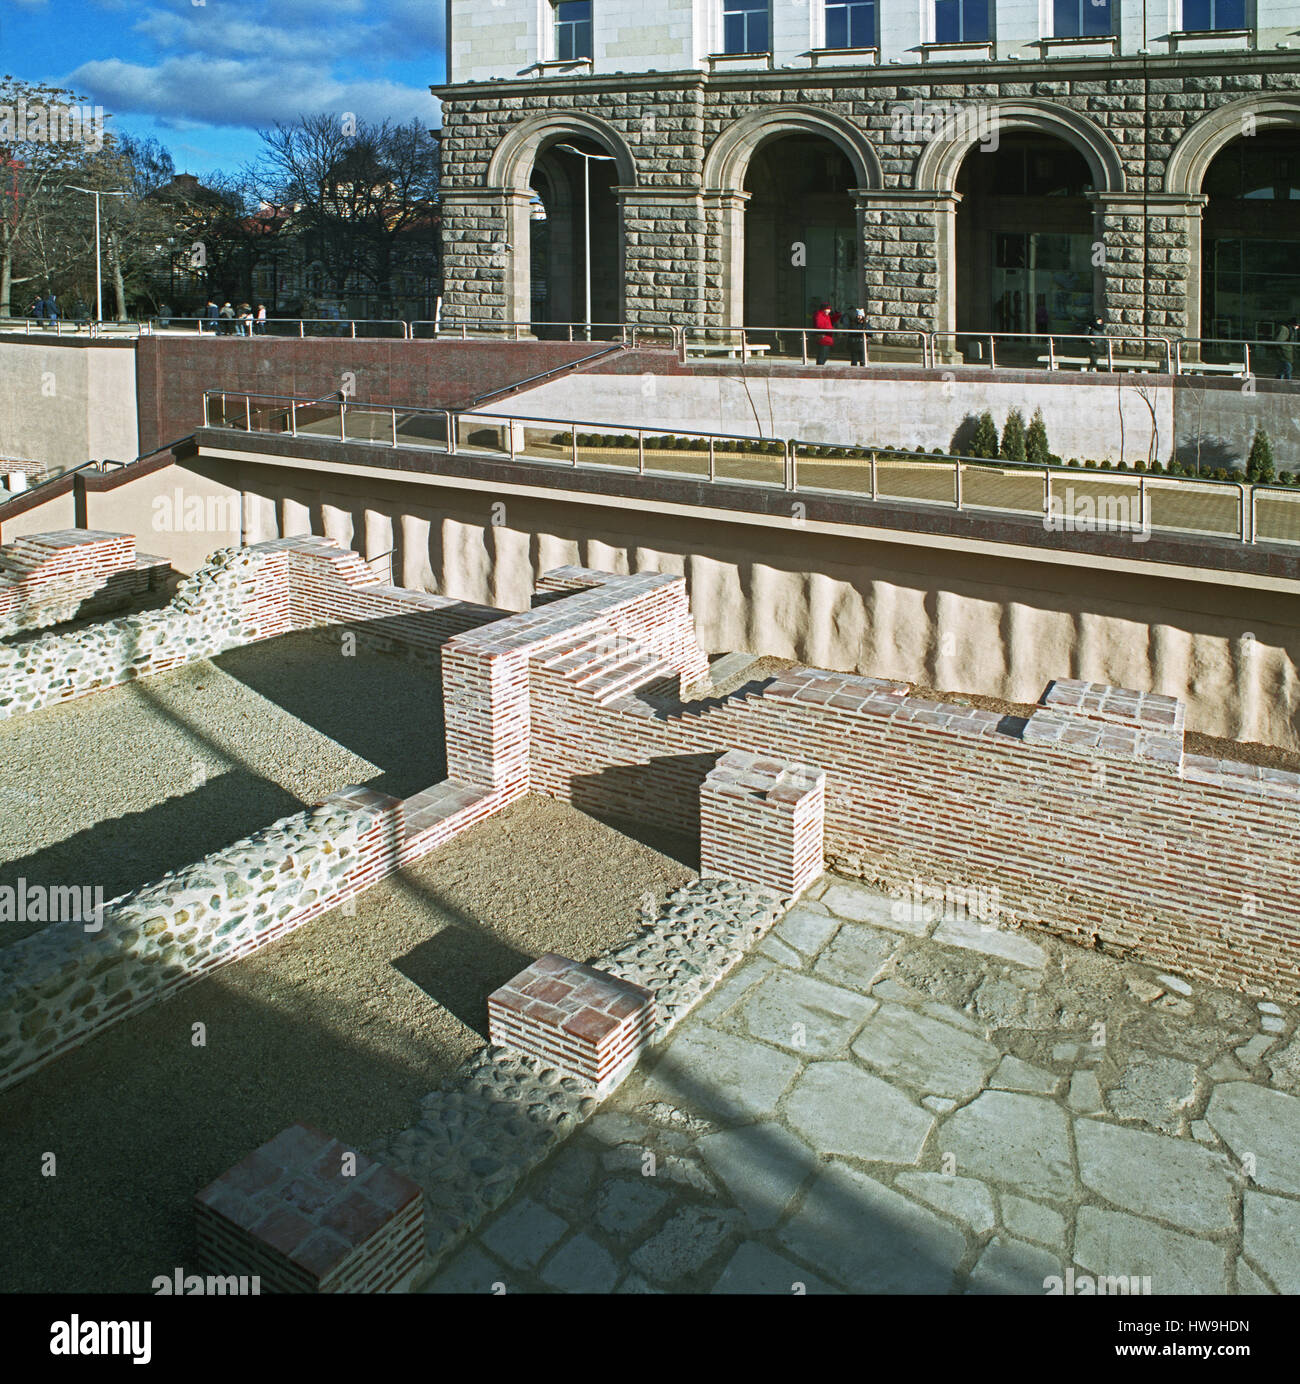 Complesso archeologico di Serdica, Sofia, Bulgaria, considerato l'ultima attrazione turistica, i resti della Sofia romana sono esposti al pubblico. Foto Stock